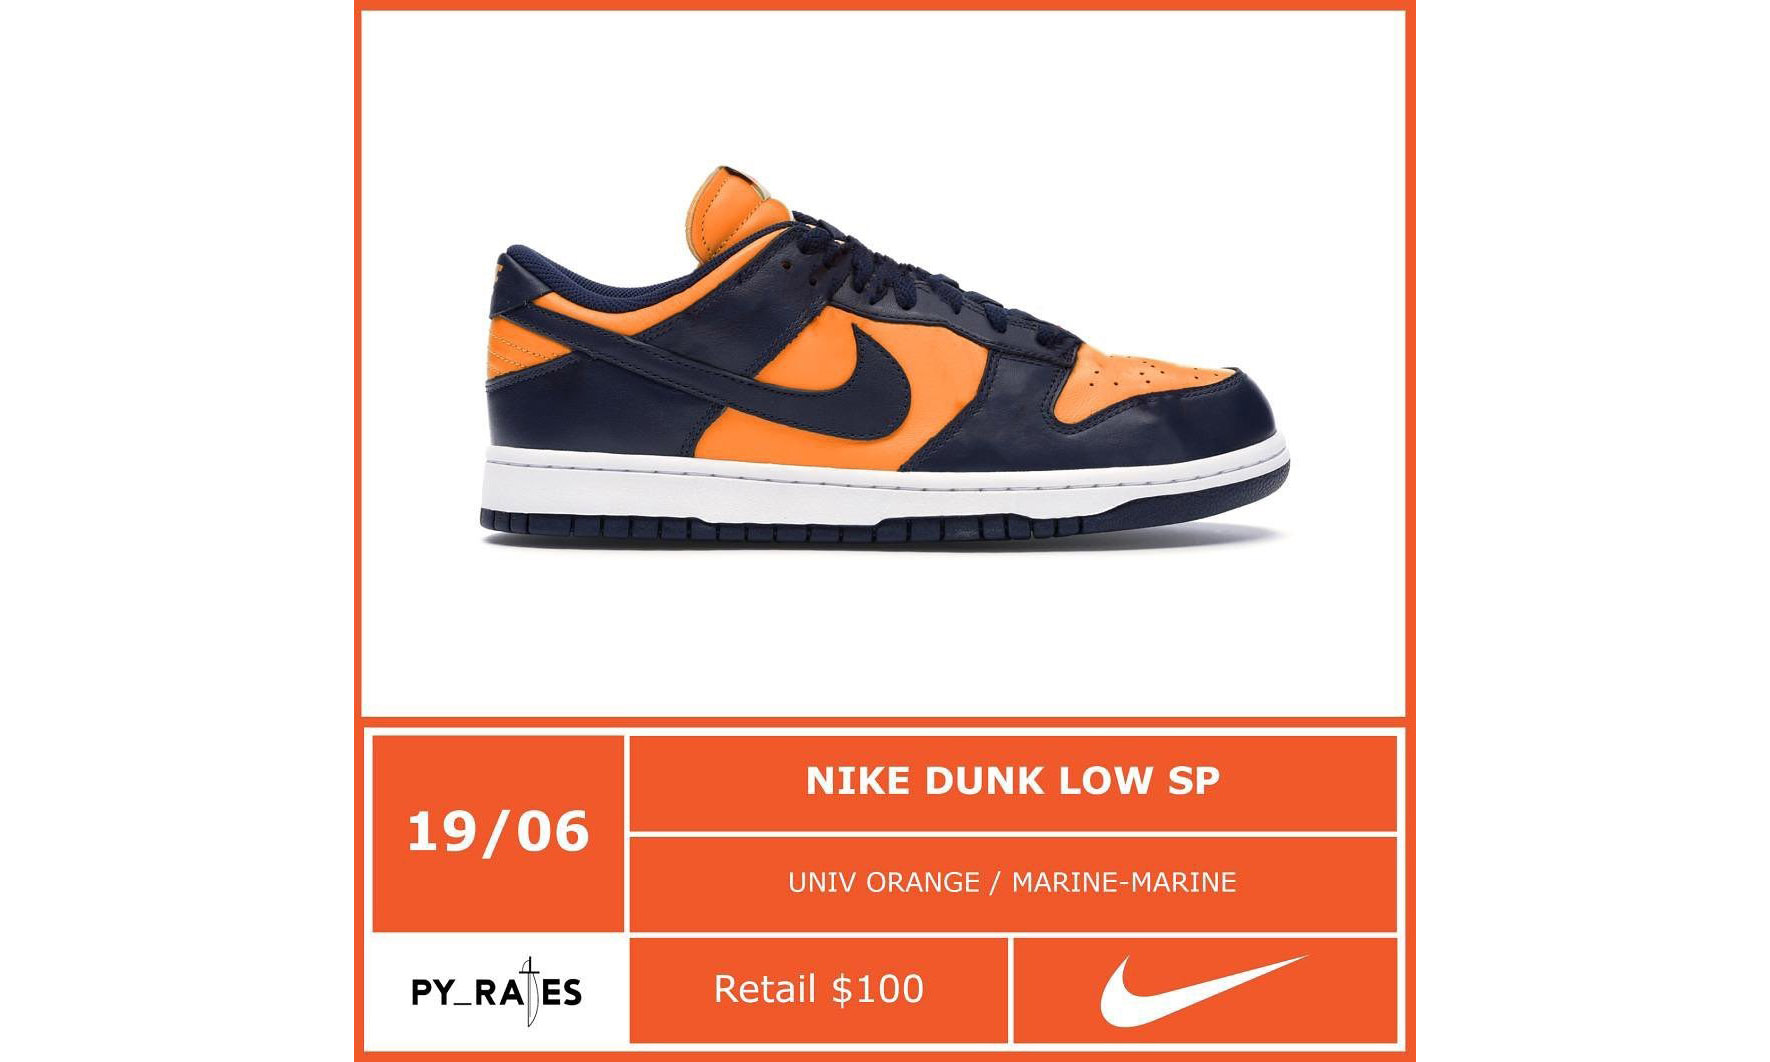 新配色 Nike Dunk Low SP 将于 6 月 19 日发售